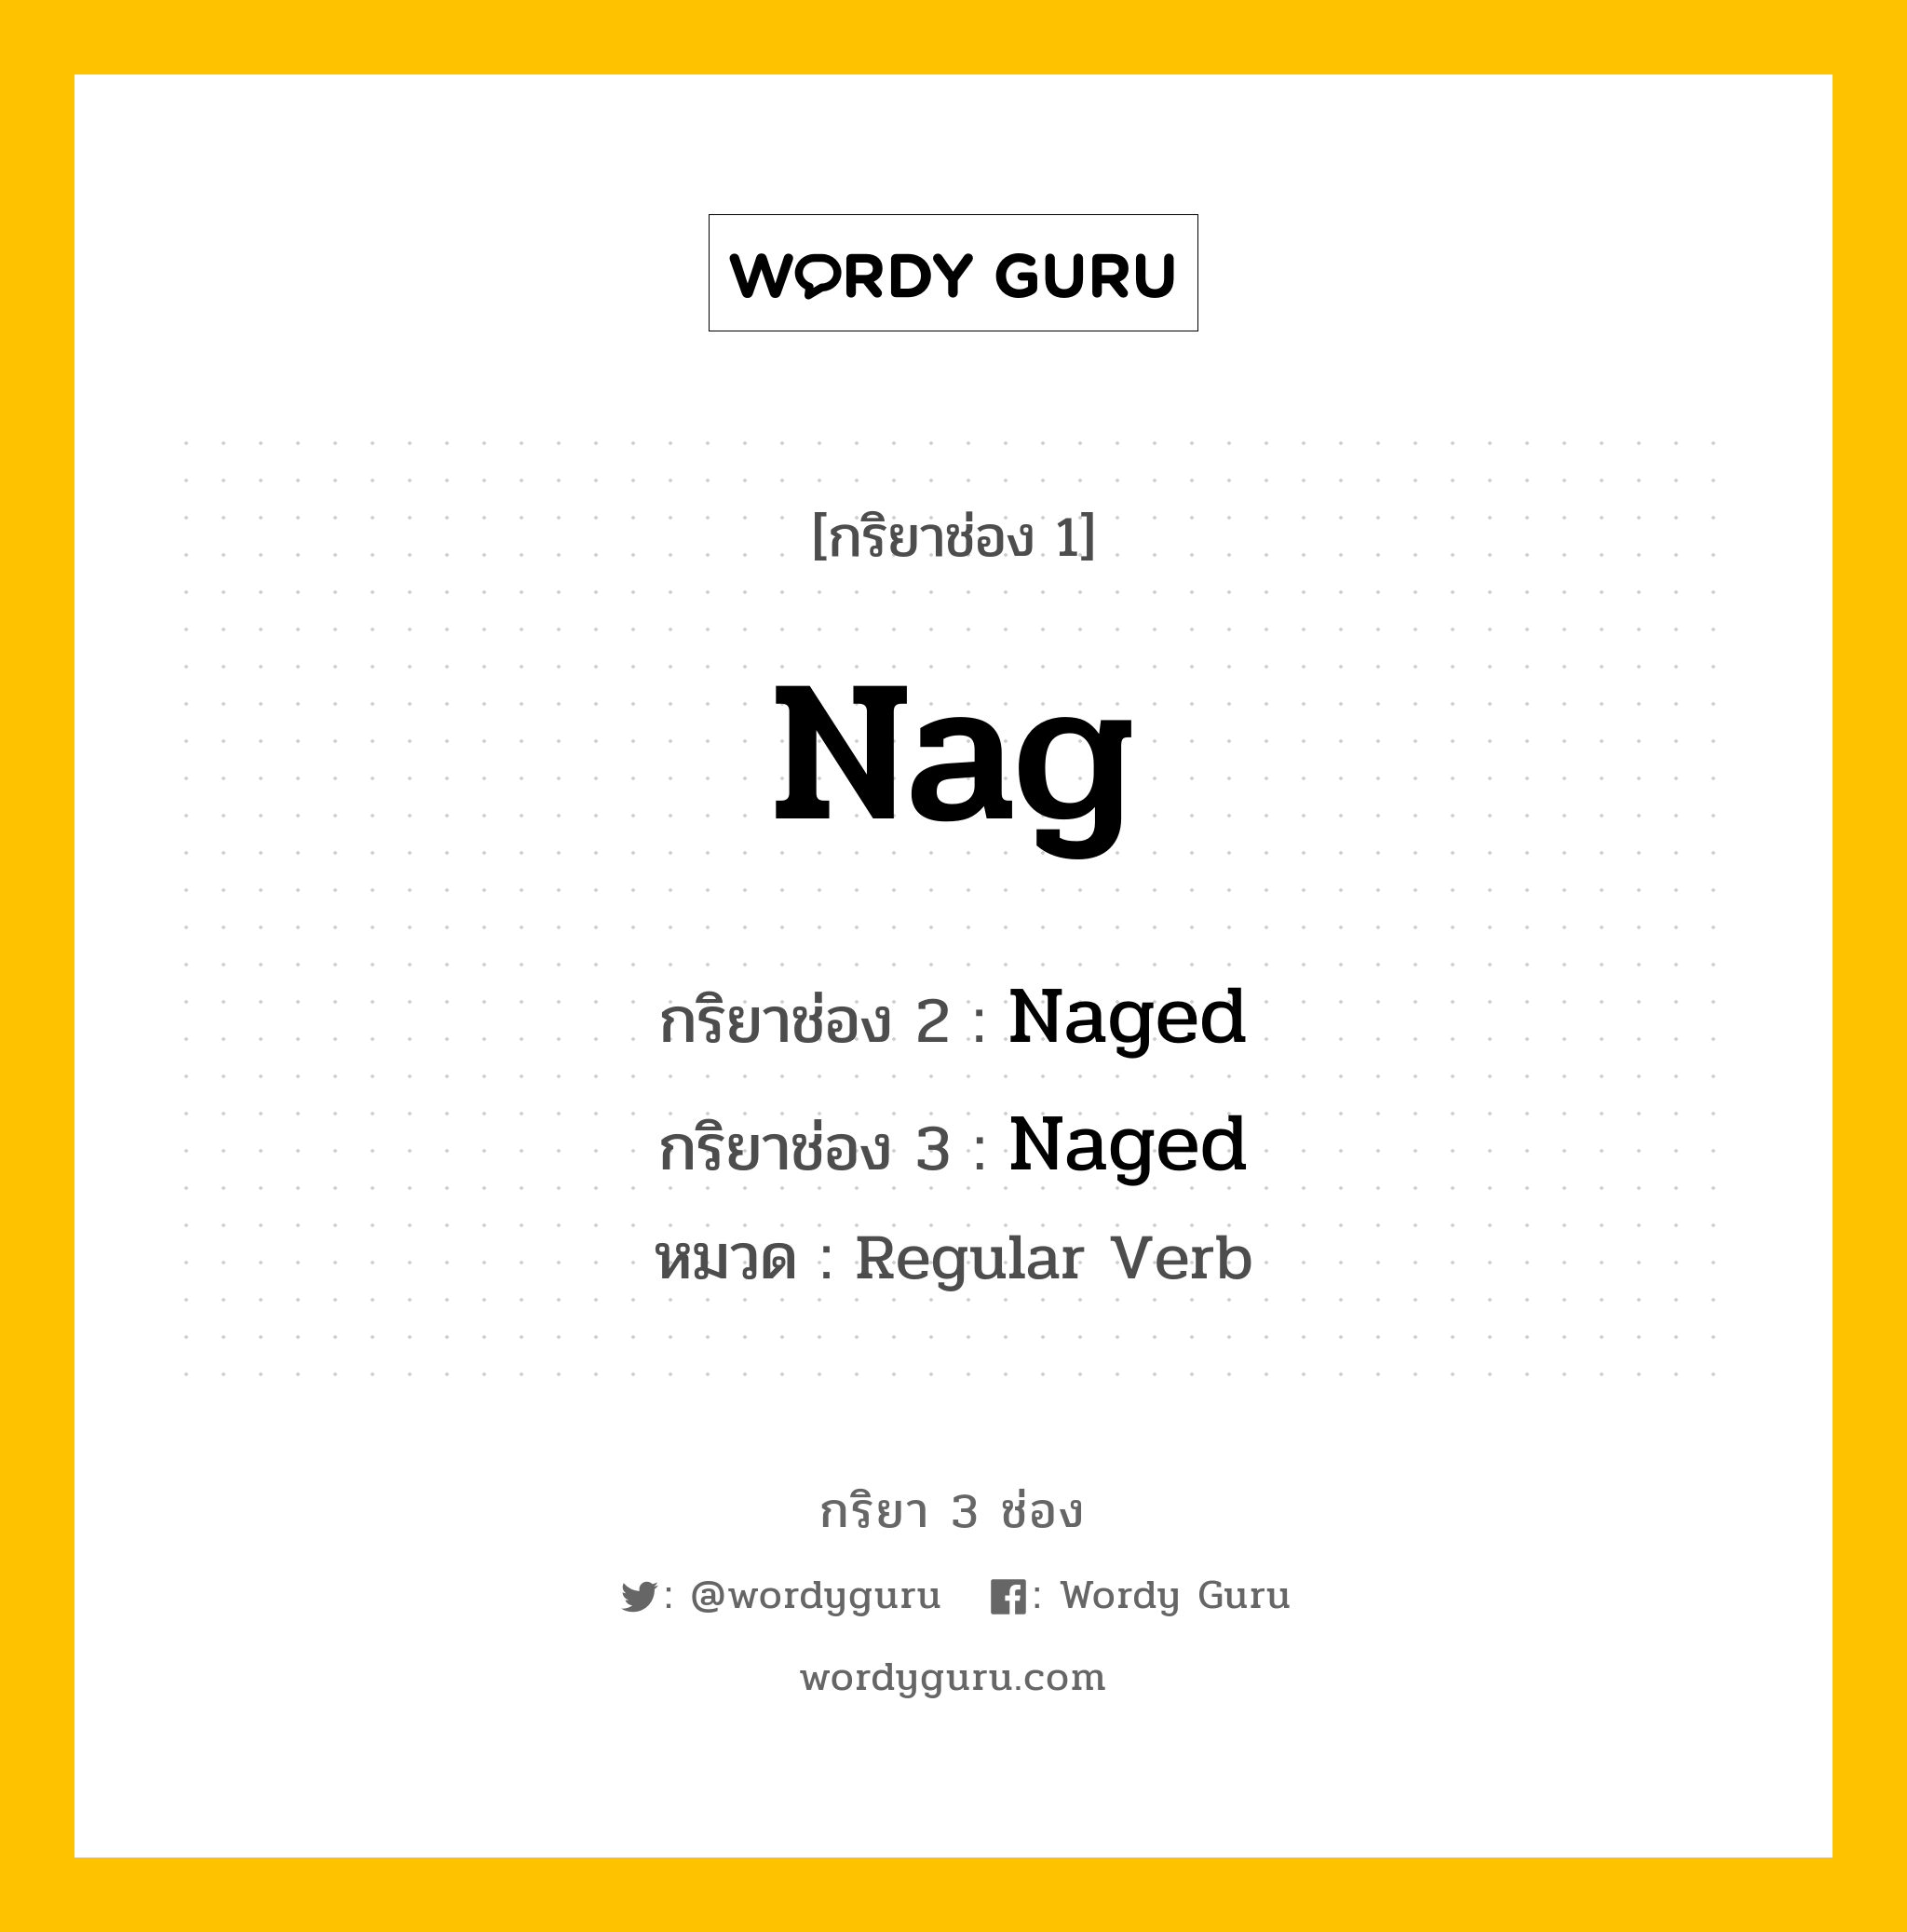 กริยา 3 ช่อง: Nag ช่อง 2 Nag ช่อง 3 คืออะไร, กริยาช่อง 1 Nag กริยาช่อง 2 Naged กริยาช่อง 3 Naged หมวด Regular Verb หมวด Regular Verb